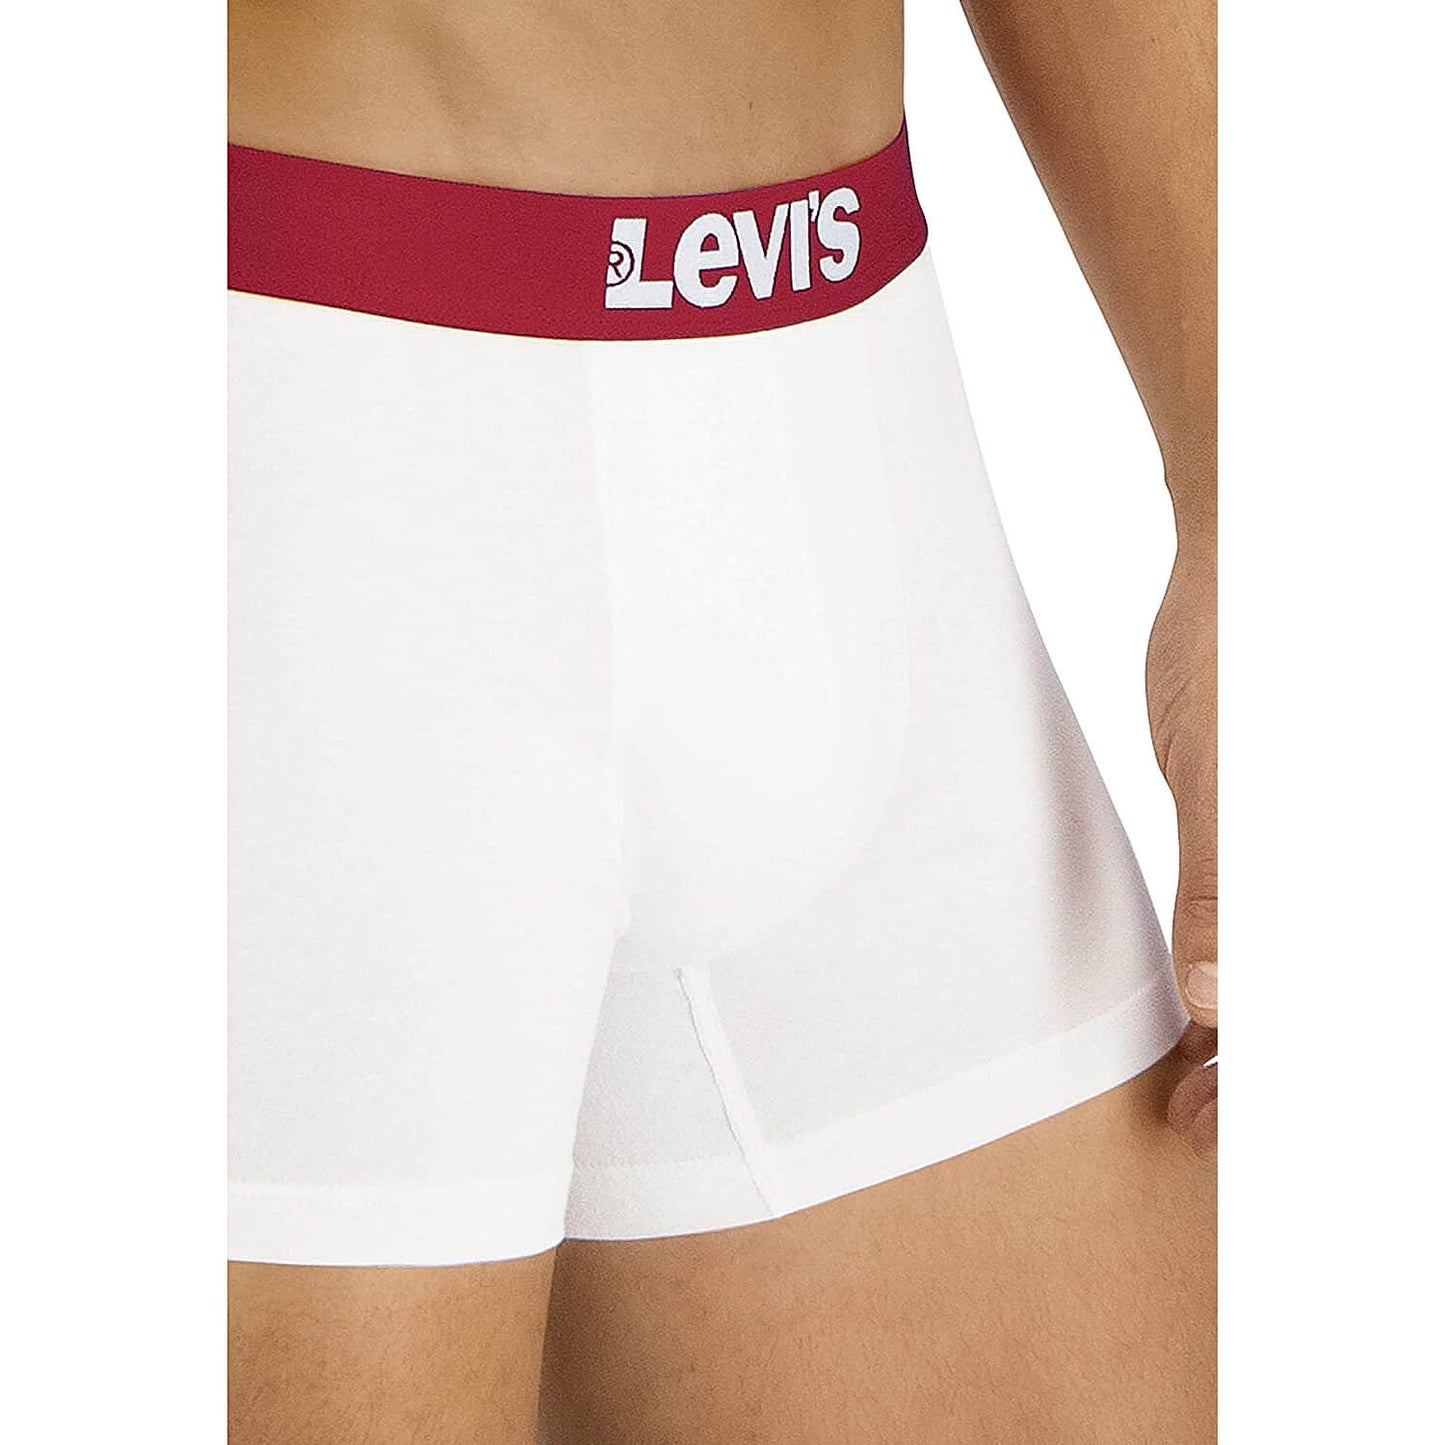 Levis Men Solid Basic Boxer (2-Pack) White / White